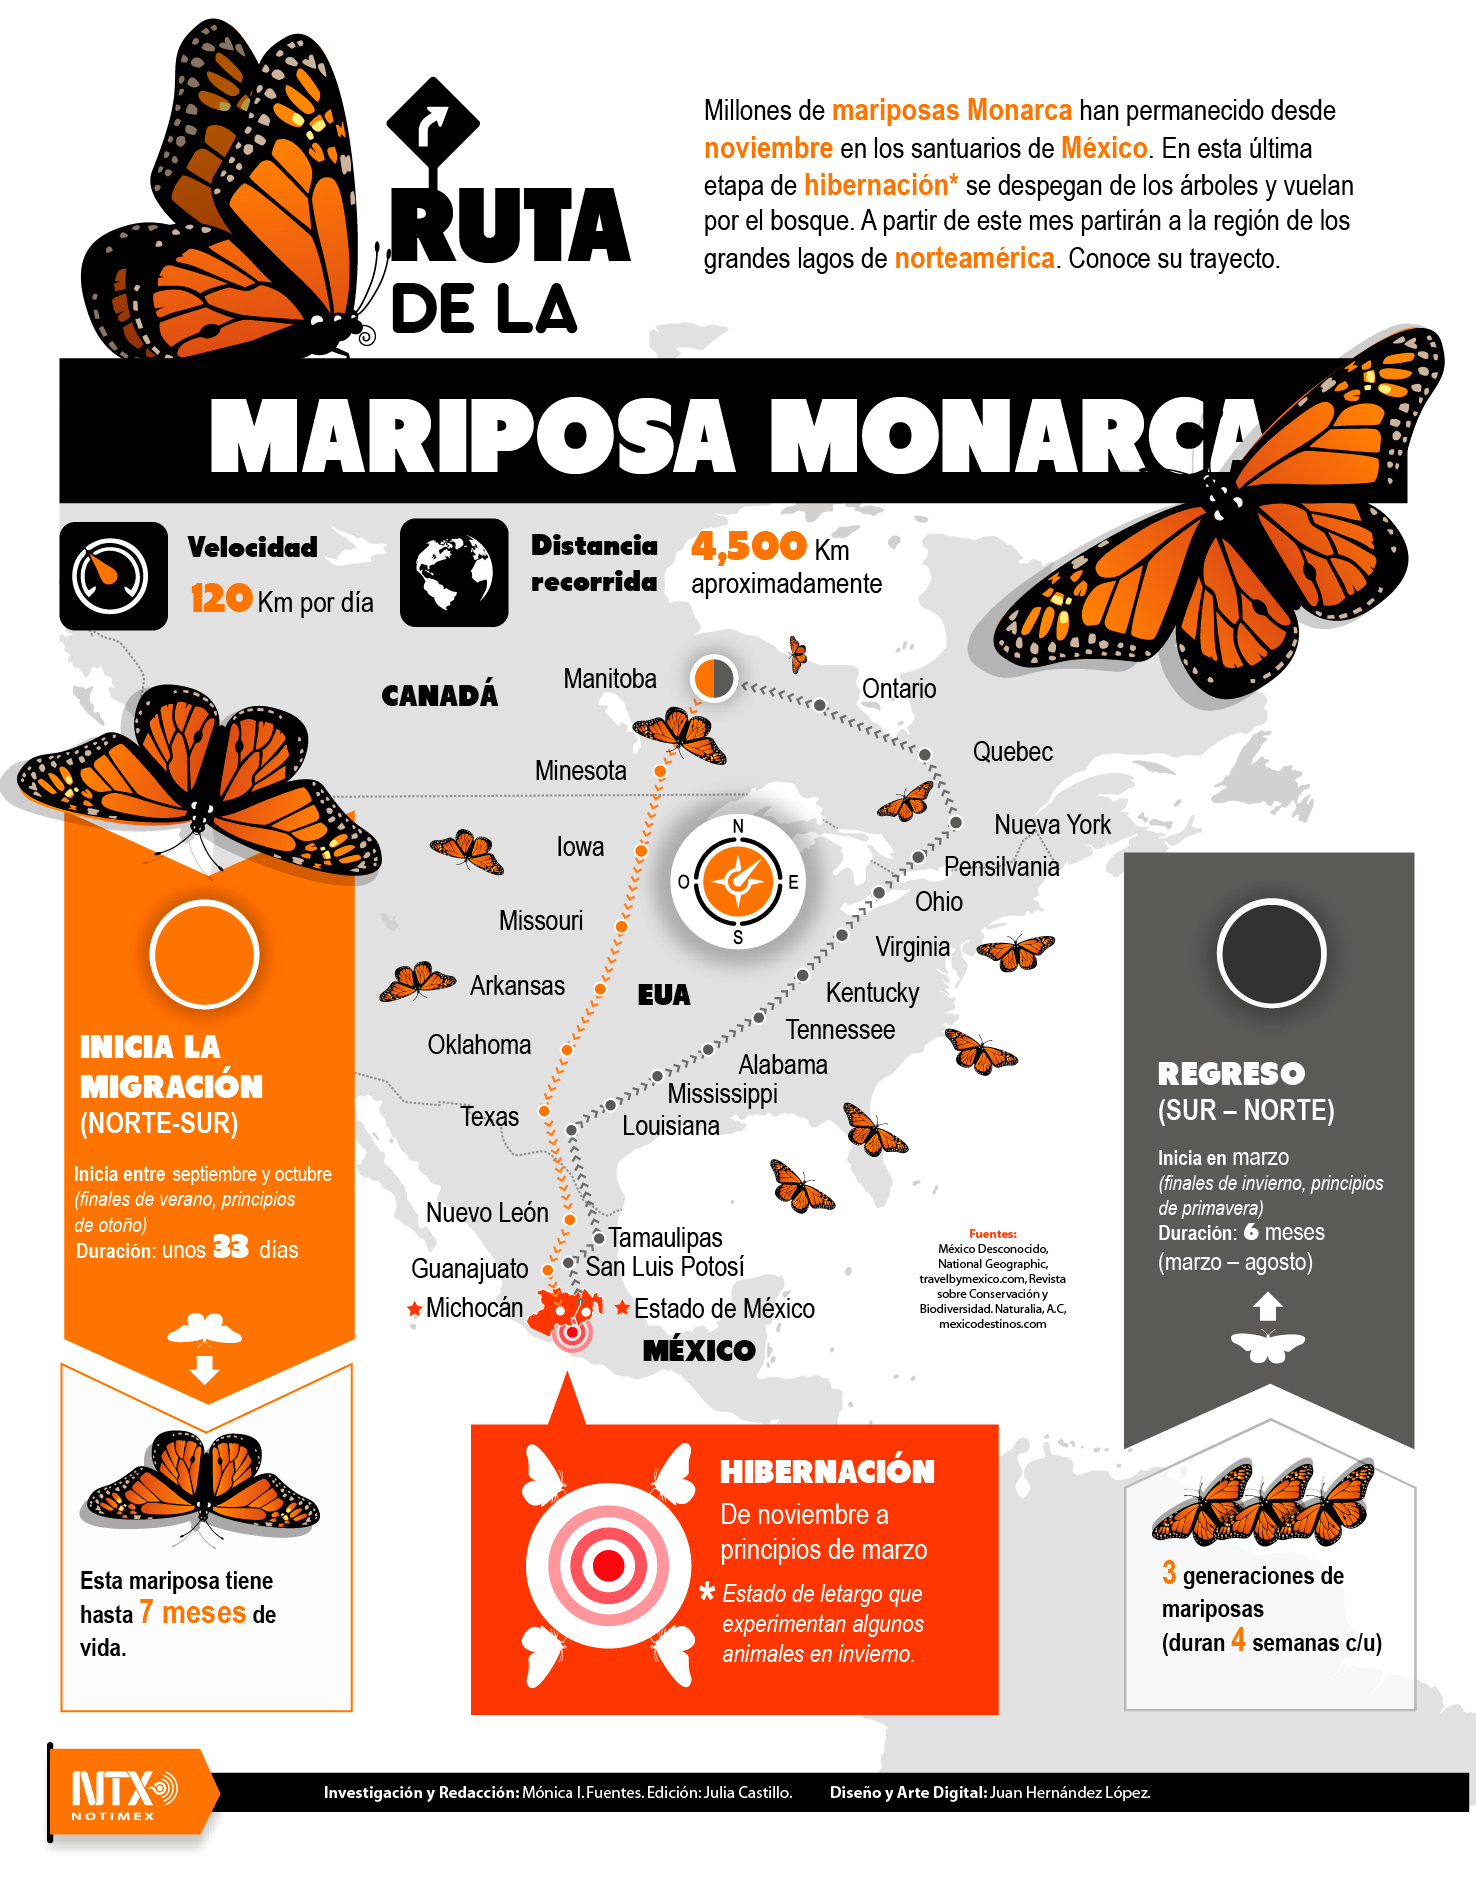 Ruta de la mariposa monarca